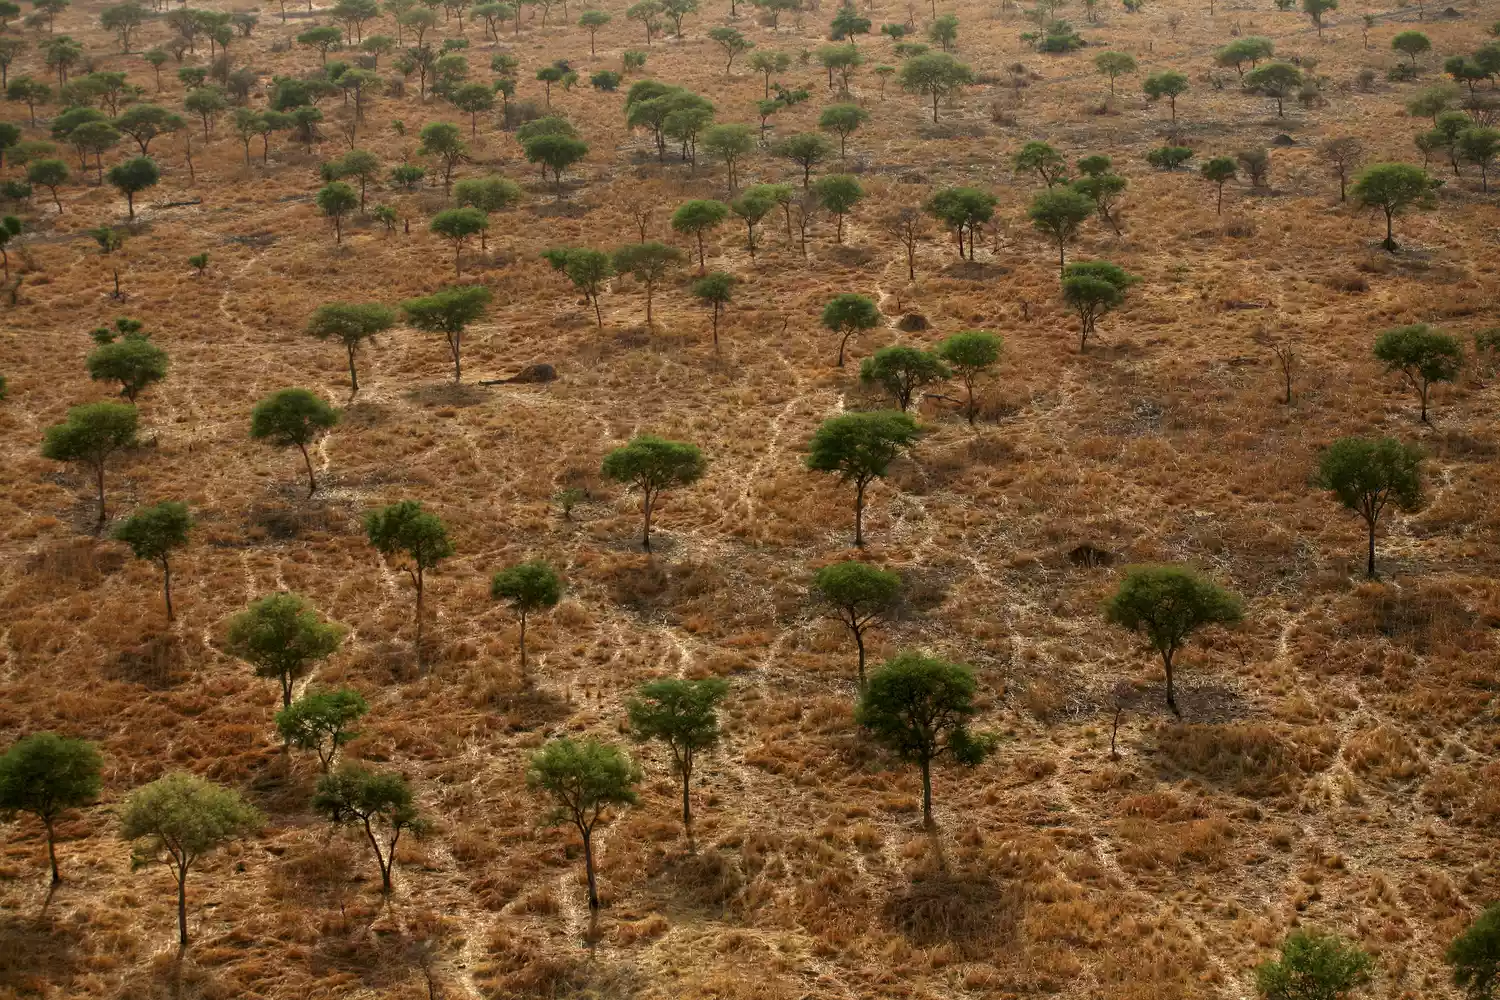 Вид с воздуха на пораженный засухой пустынный ландшафт в центральной Африке